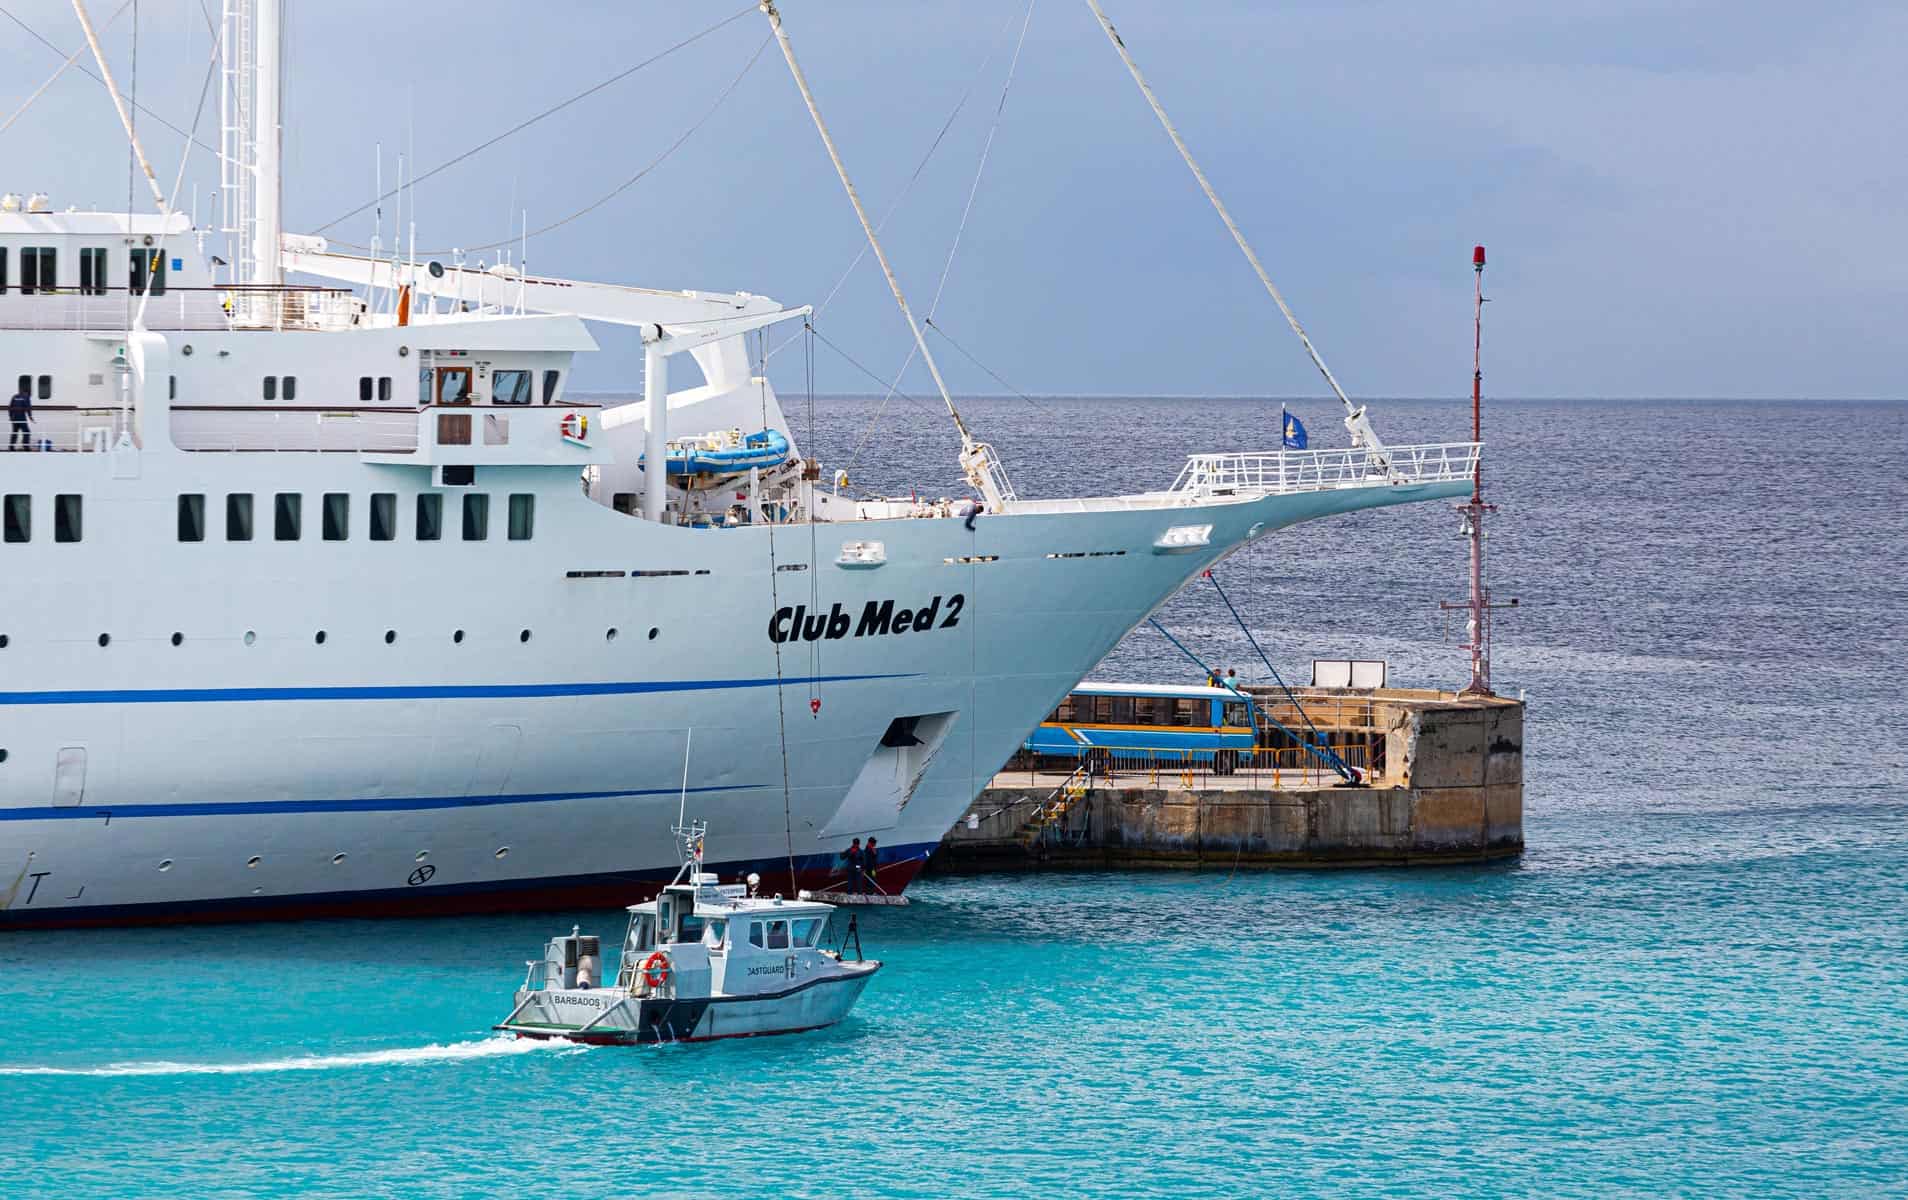 Arribó al Puerto de La Habana Crucero de Vela Francés Club Med 2